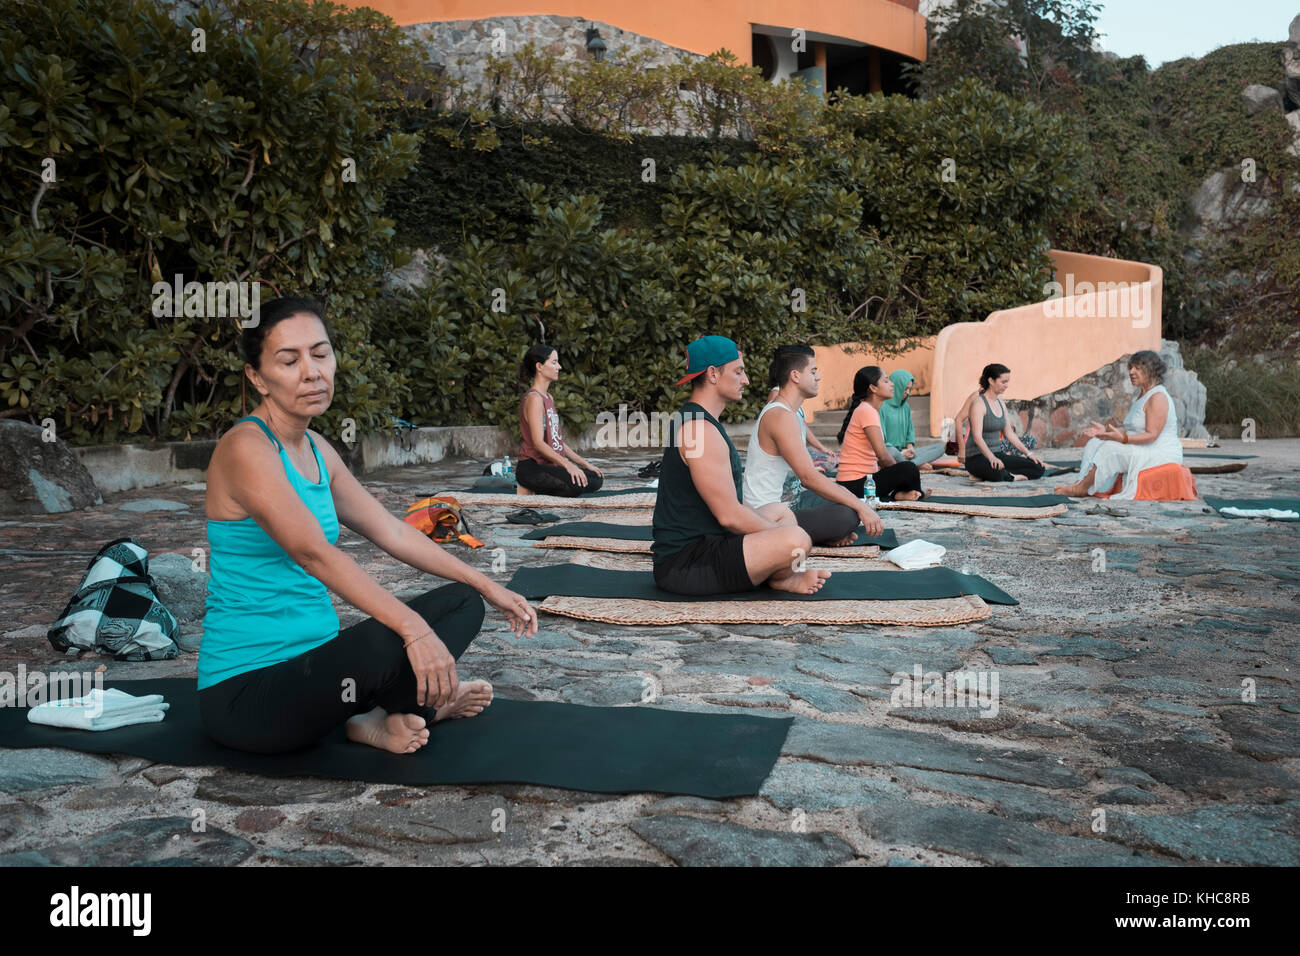 Yoga Retreat, Gruppe von Menschen sitzen und meditieren auf Matten, Puerto Vallarta - mismaloya, Mexiko Stockfoto